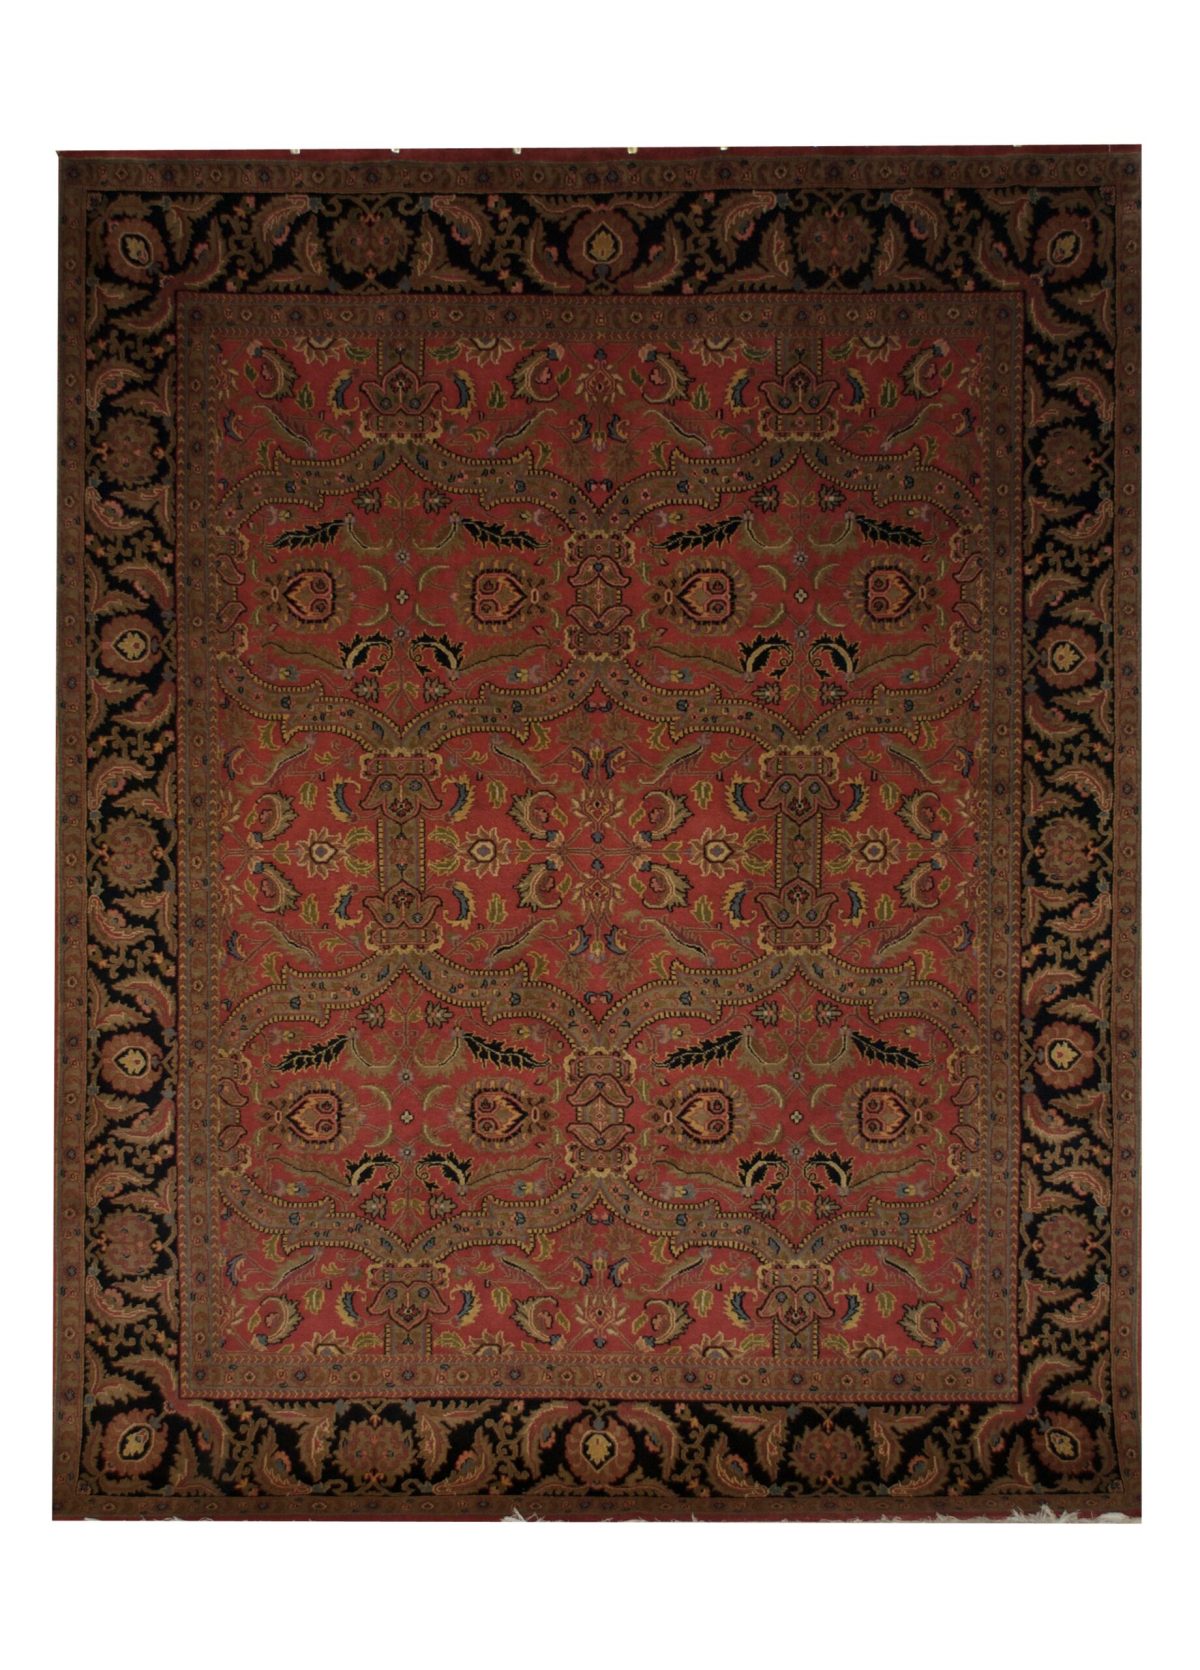 Kashan 8' x 10' Handmade Area Rug - Shabahang Royal Carpet